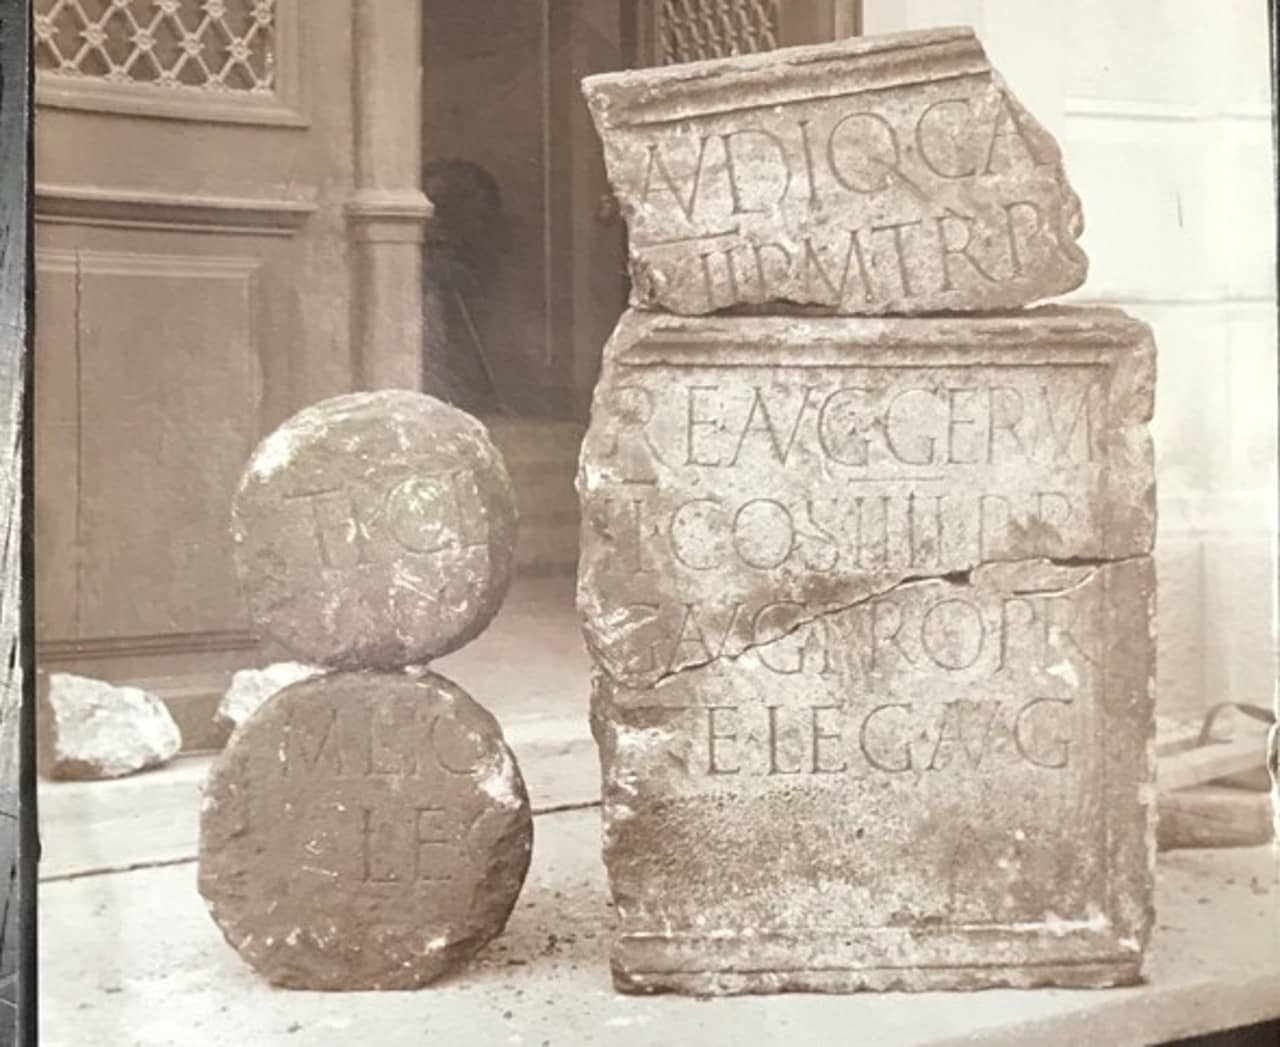 Archivaufnahme einer fragmentierten römischen Inschrift